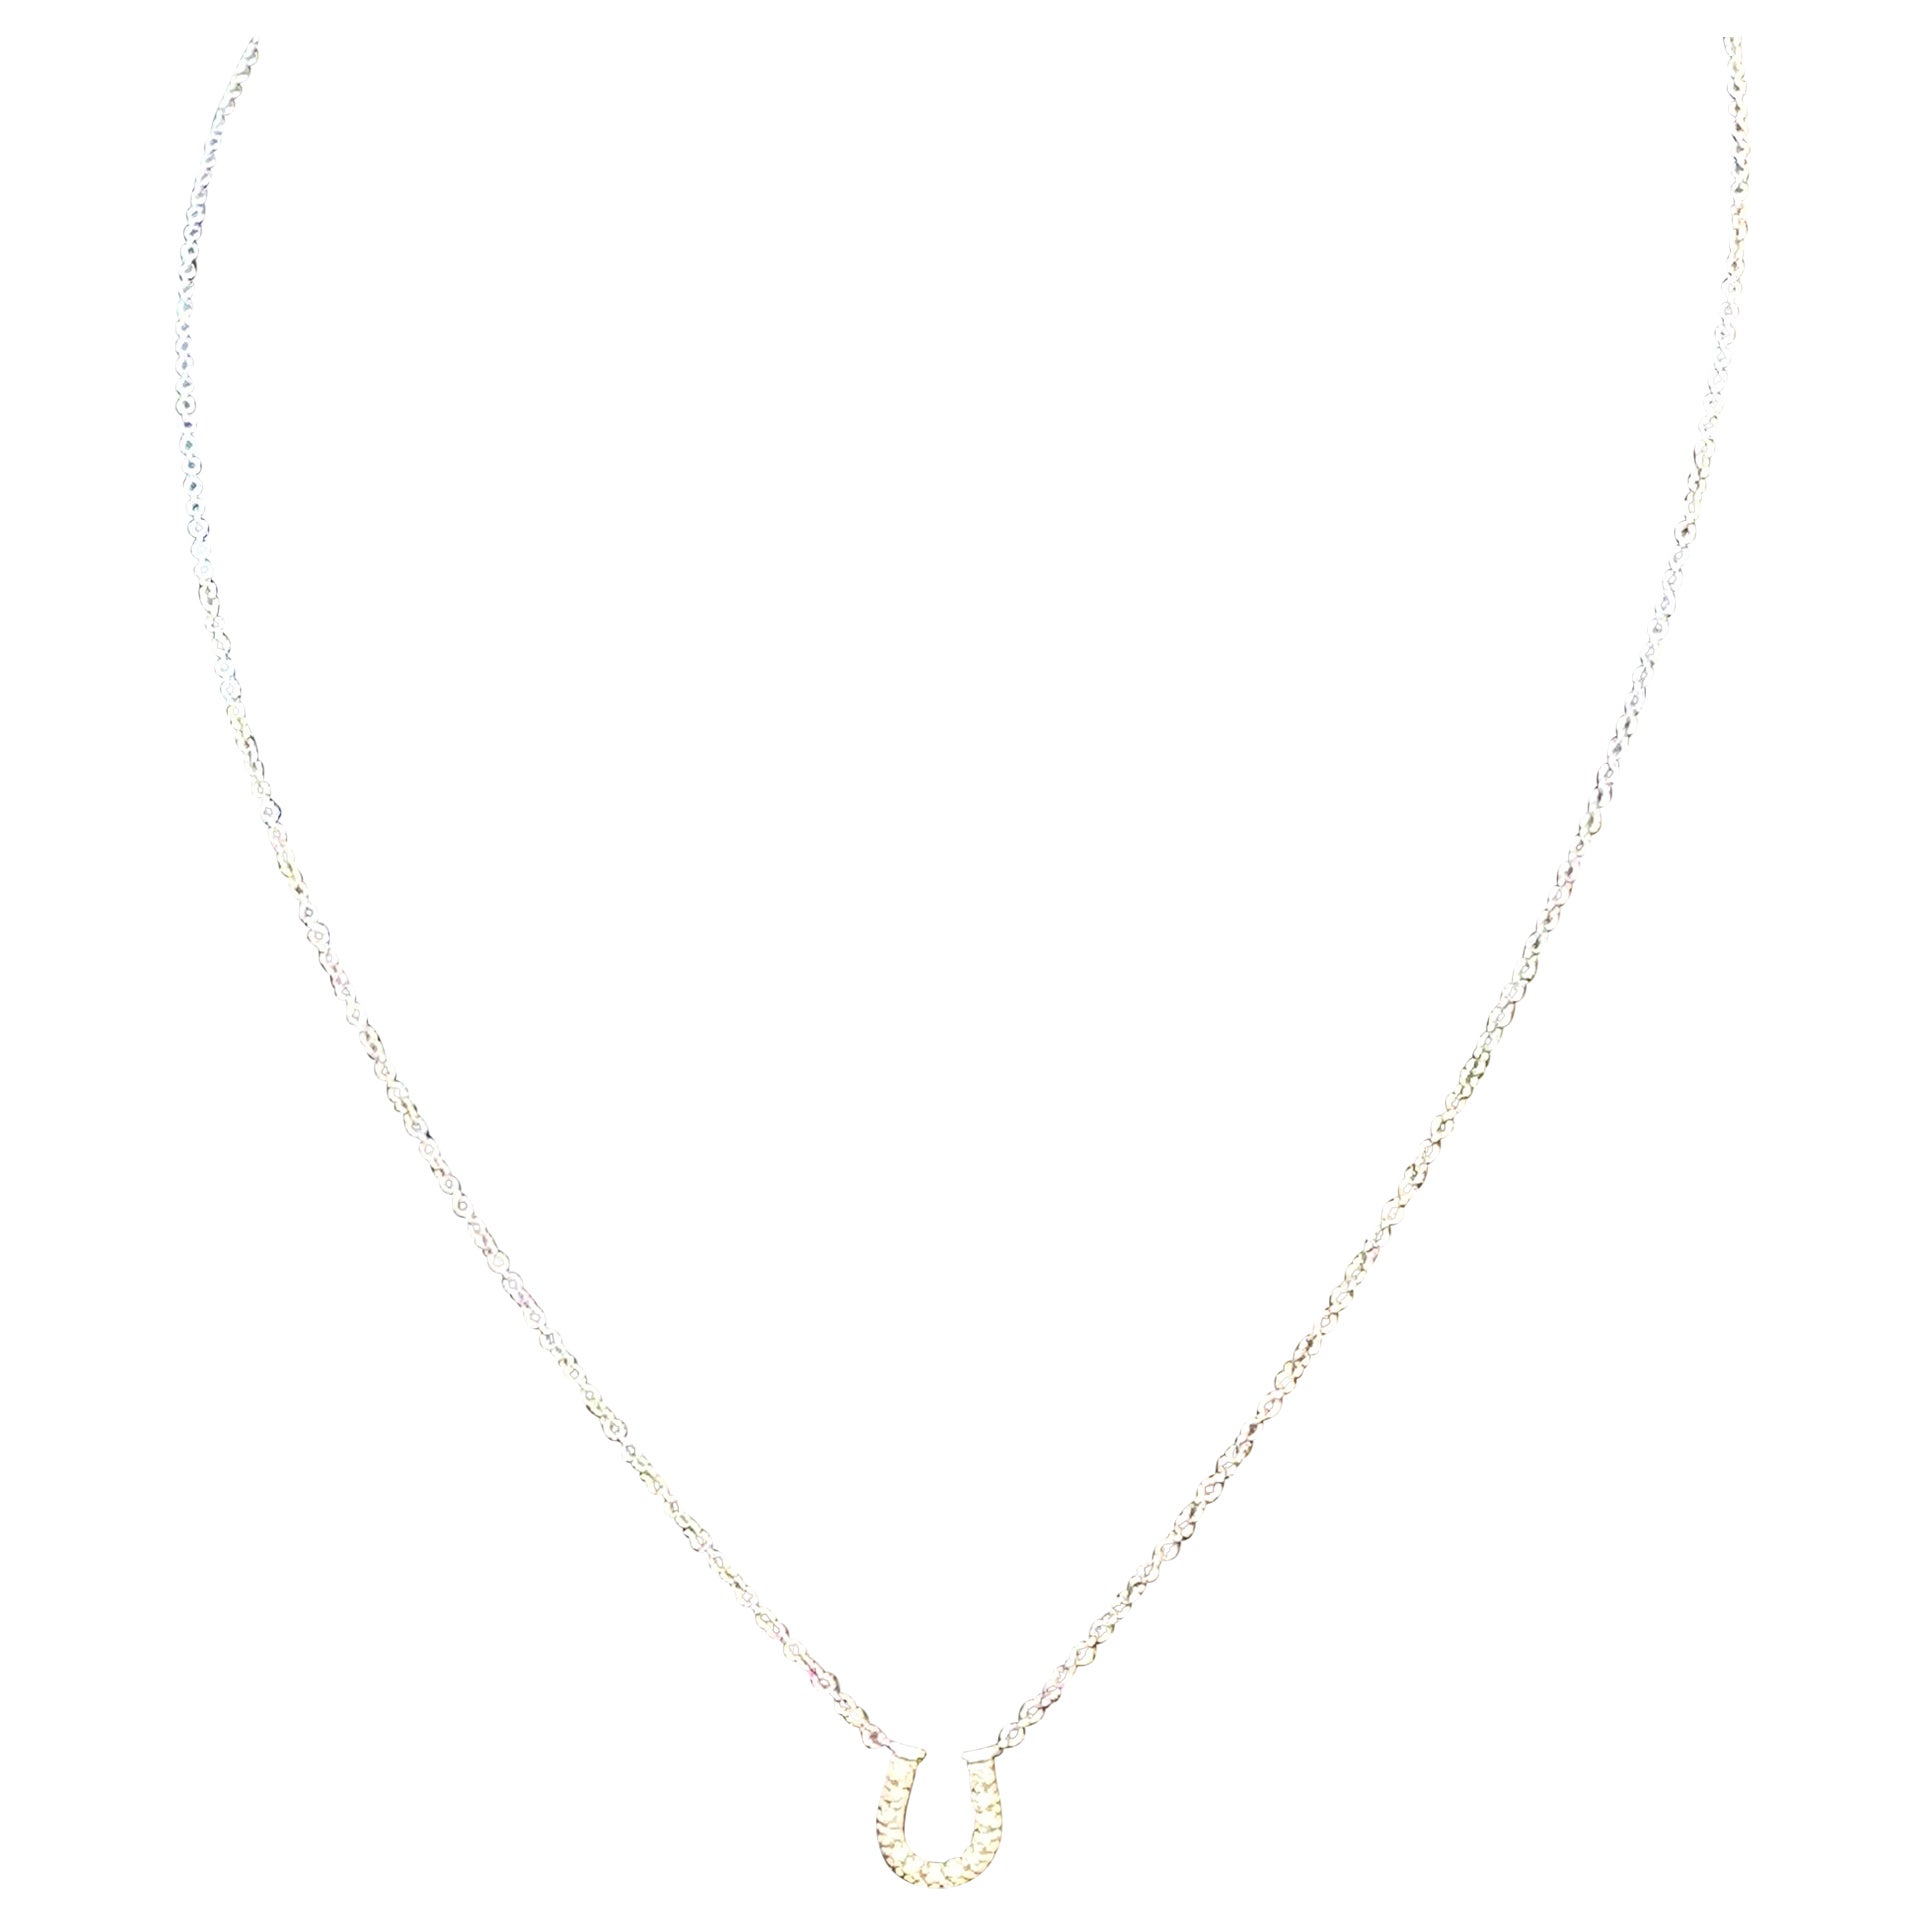 Tiffany & Co. Horseshoe 18P Diamond Necklace 16" 18 Karat White Gold Authentic